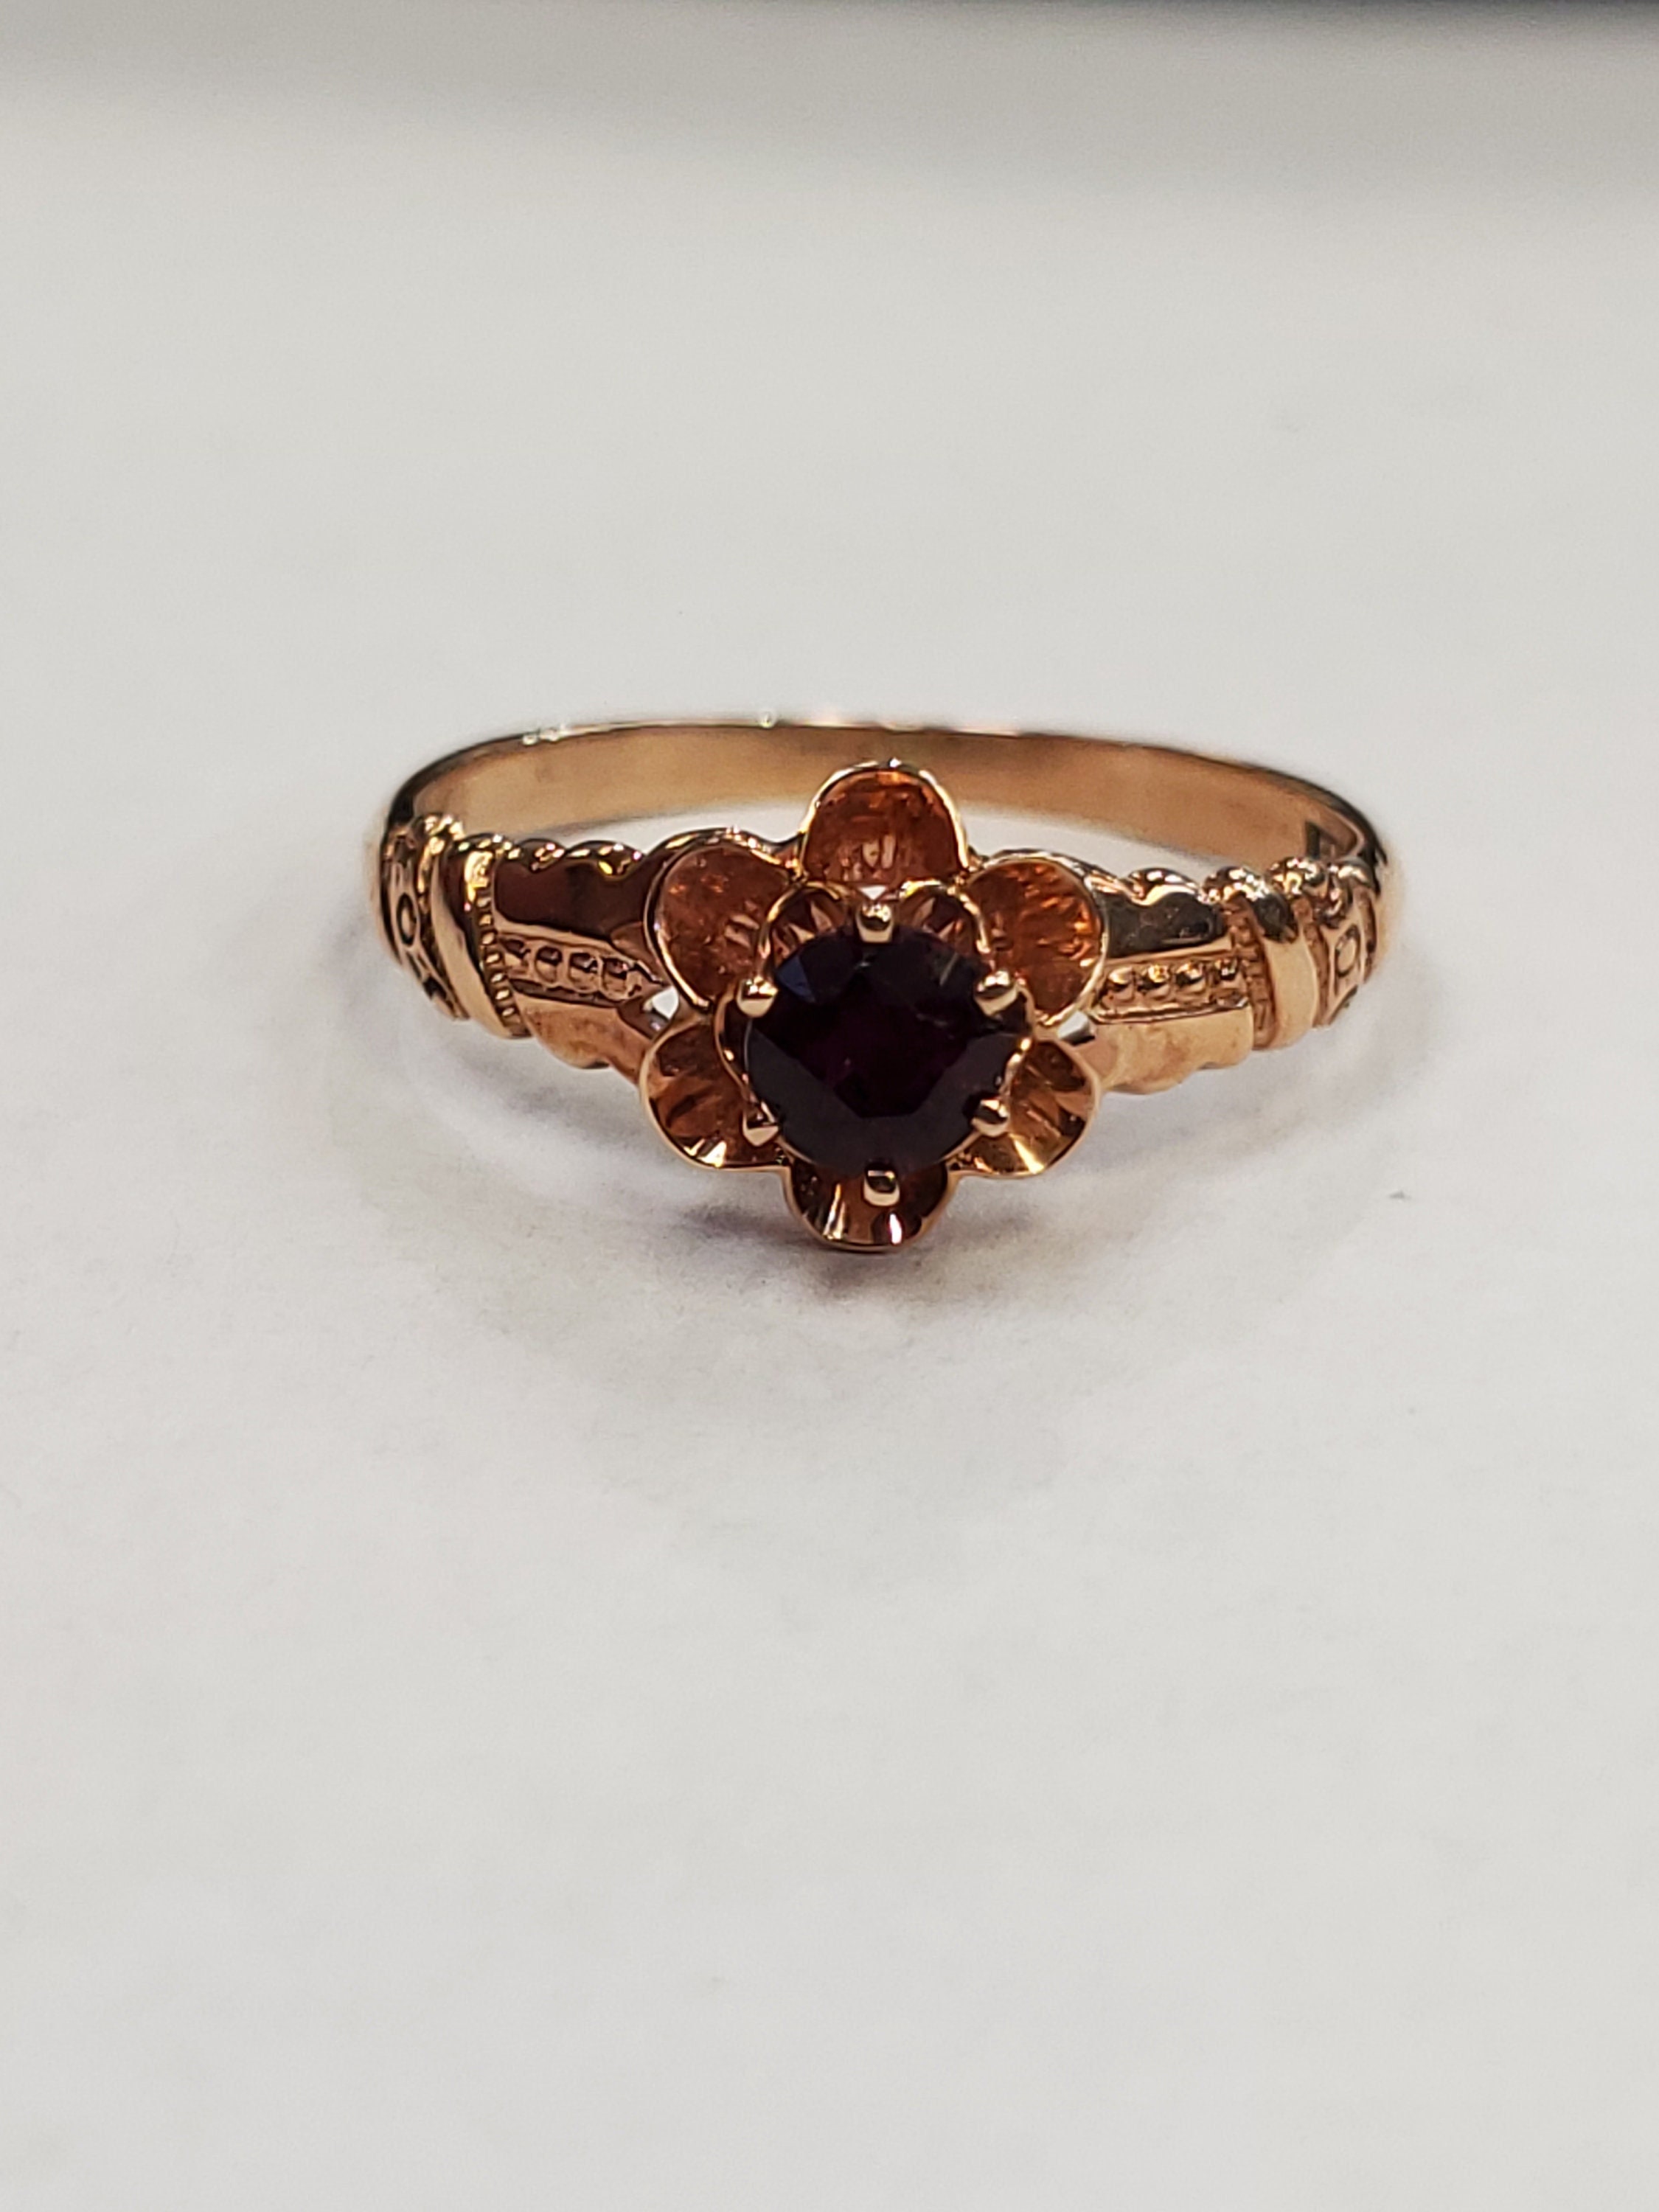 Bernot & Heger antique garnet ring in 10k rose gold size 6.5